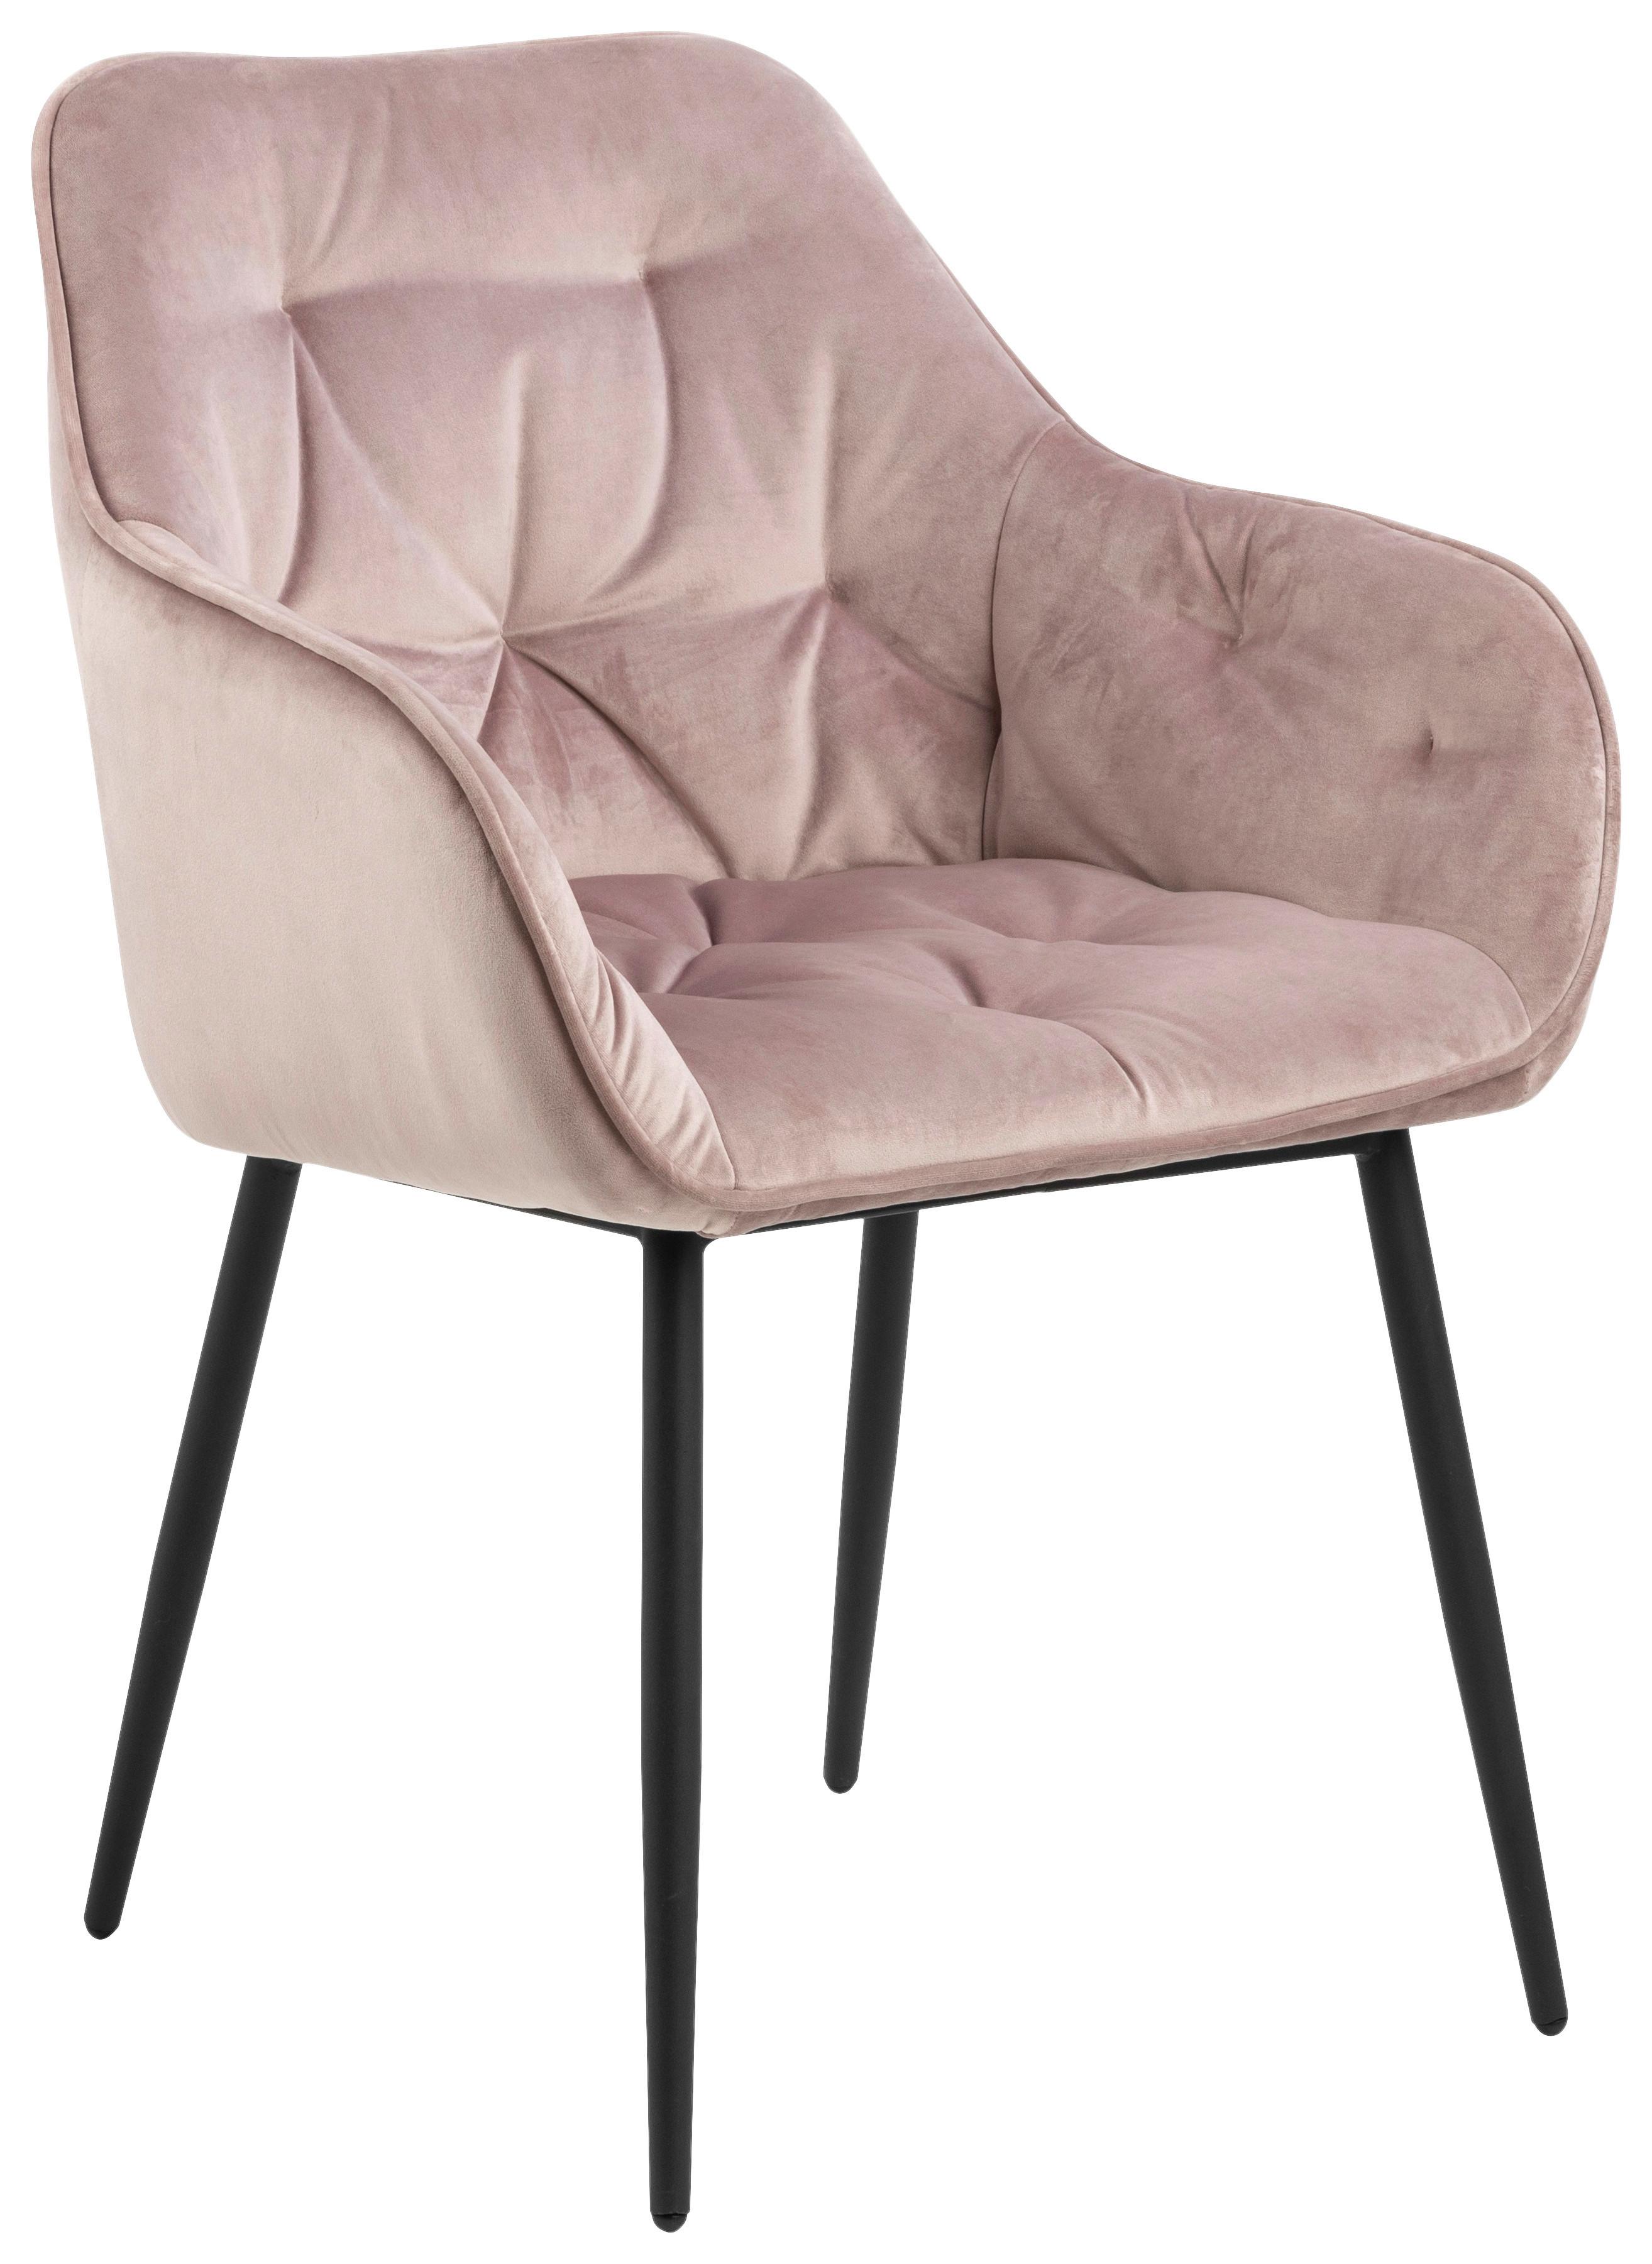 Židle S Područkami Brooke Růžová - růžová/černá, Trend, kov/textil (58/83/55cm) - Livetastic